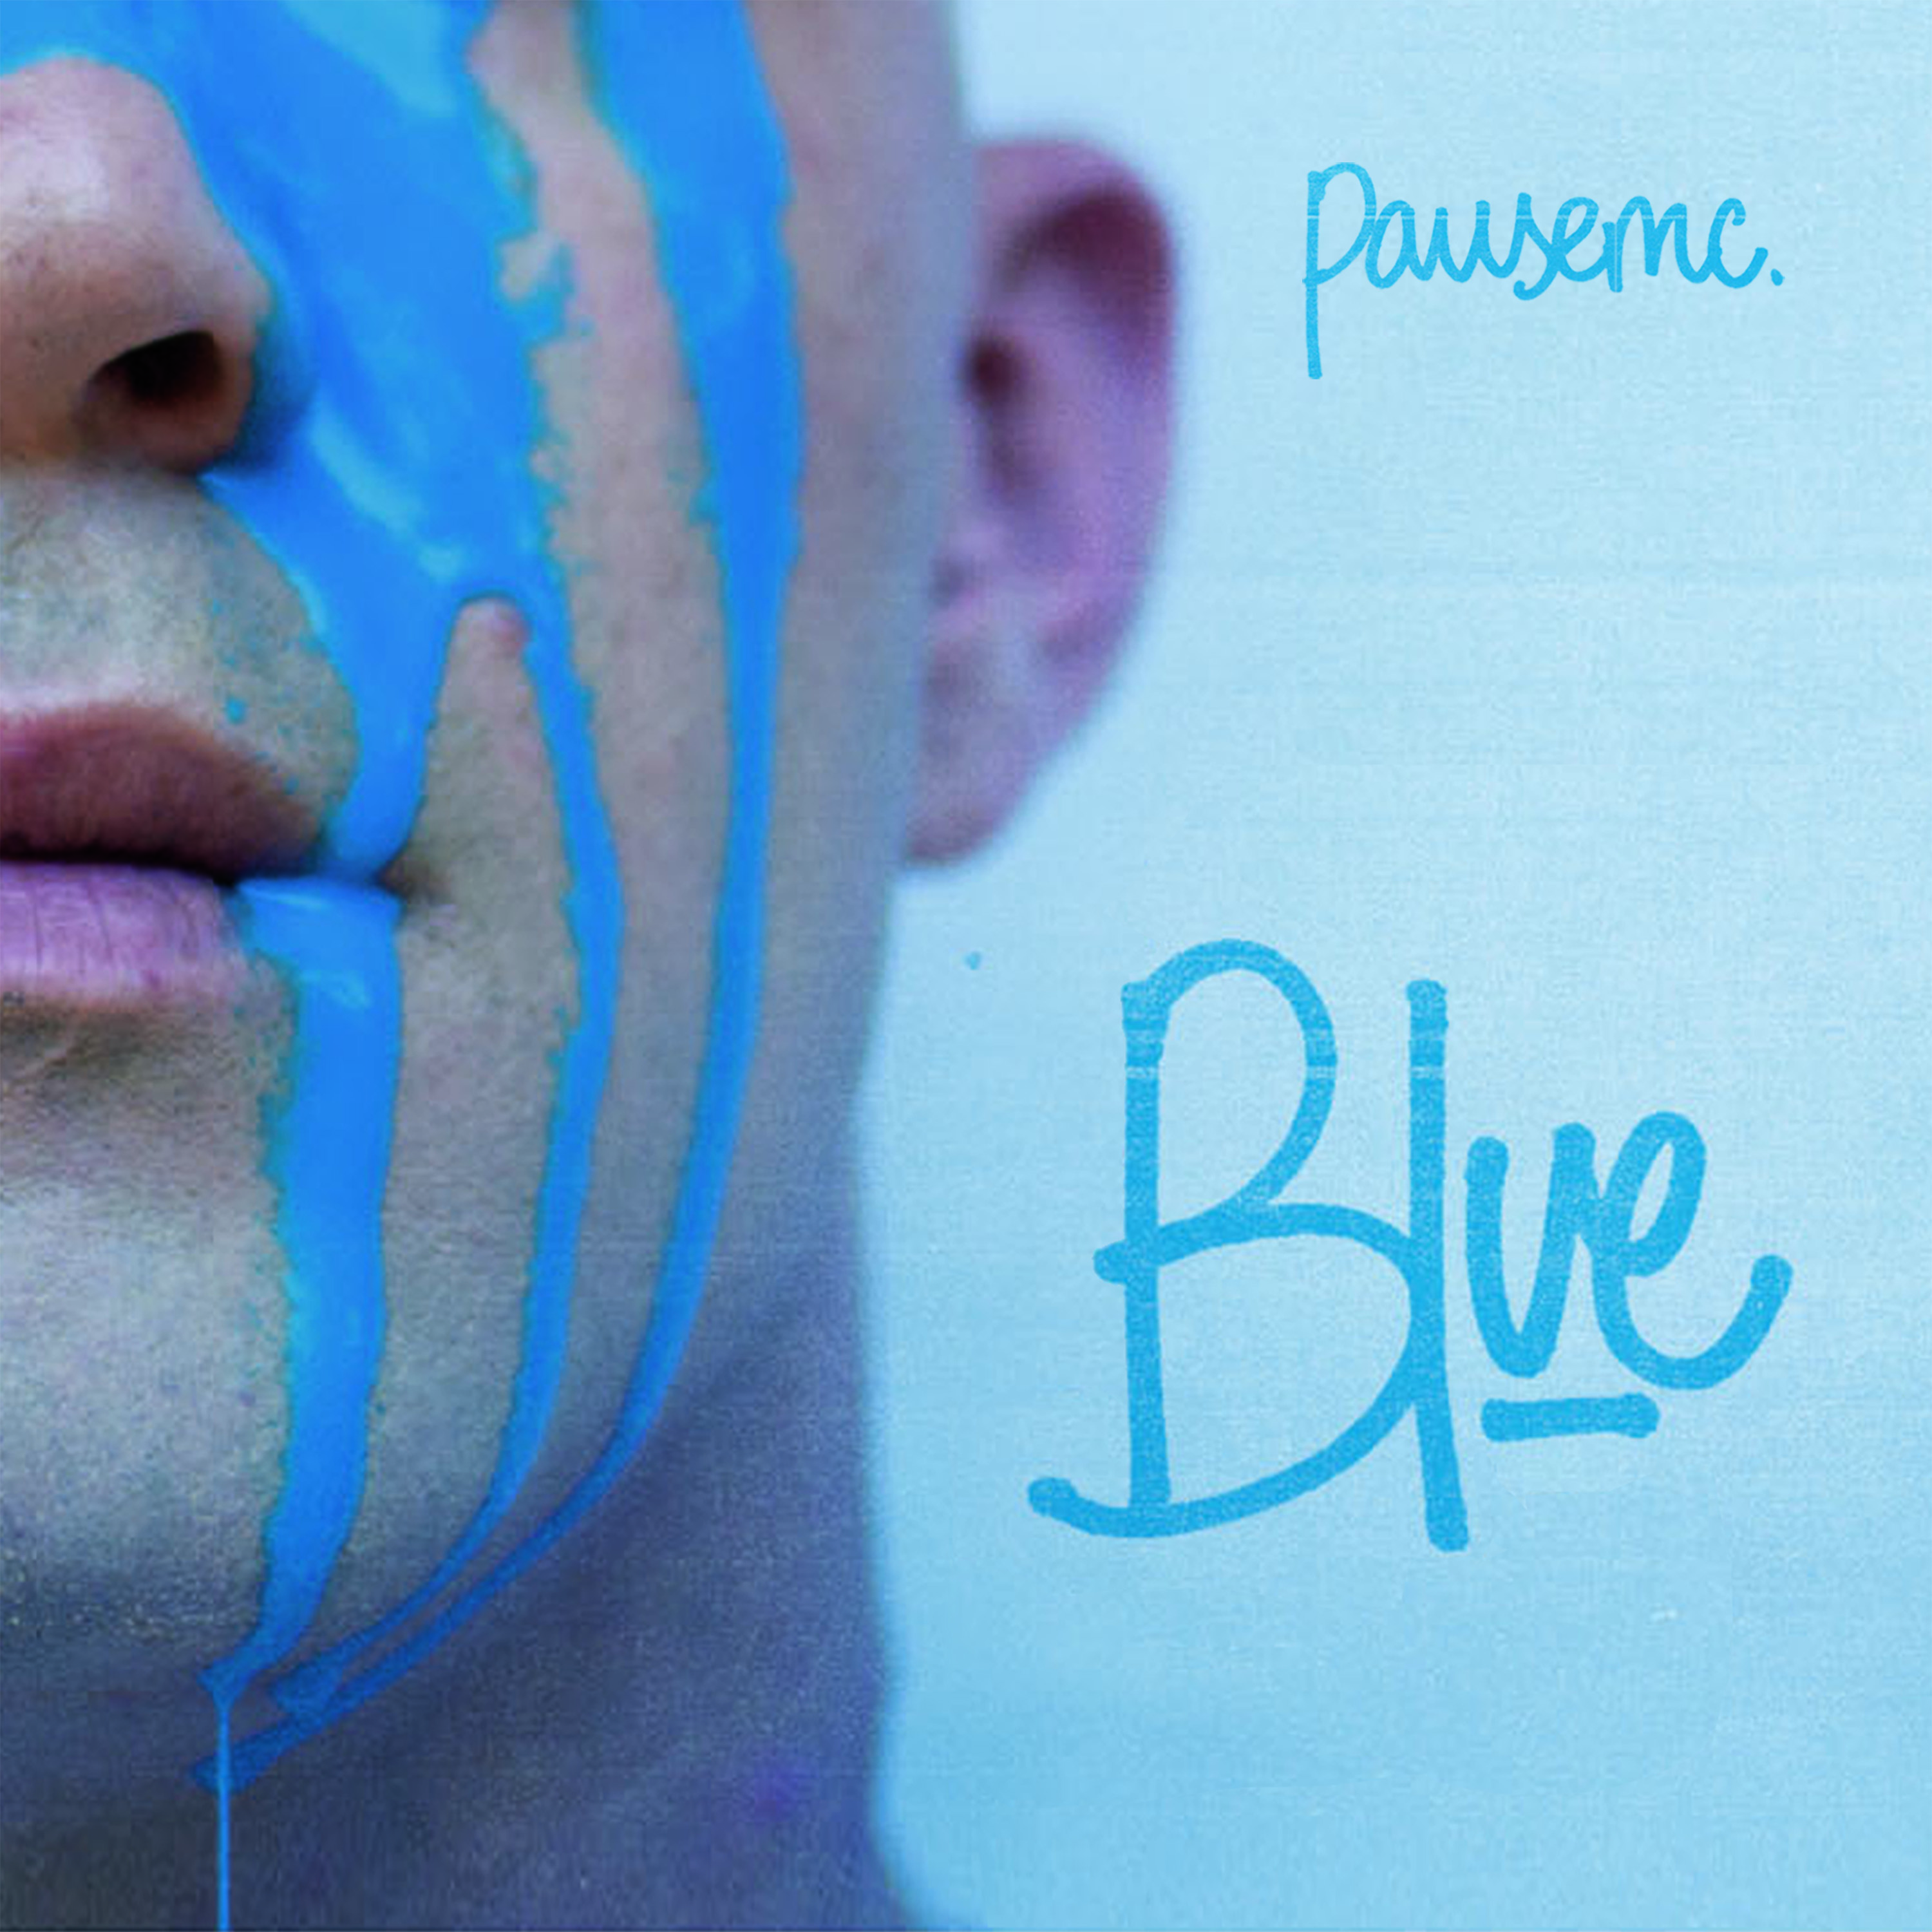 MixTape: Pausemc – Blue